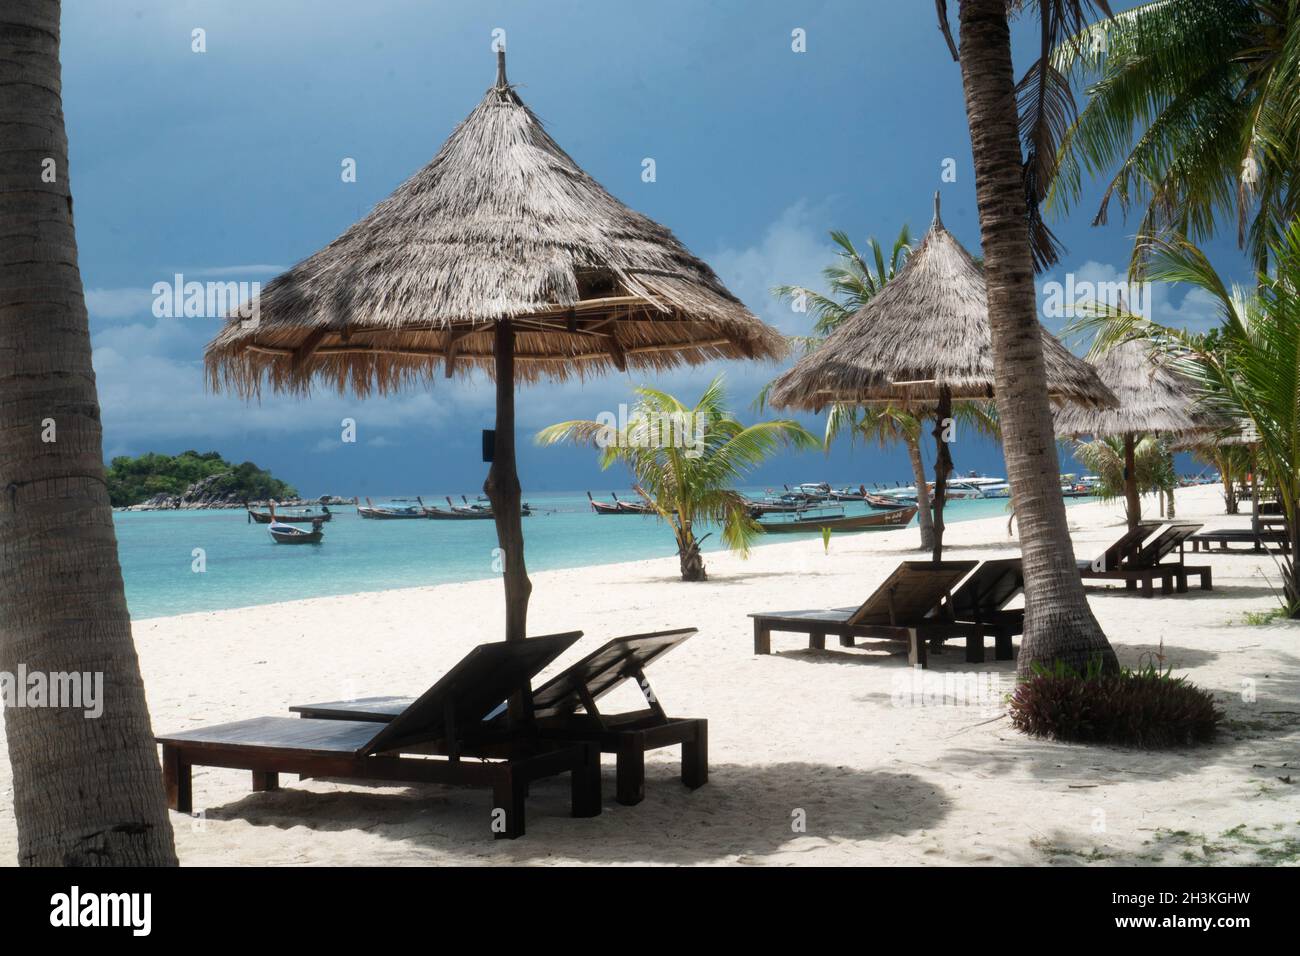 Spiaggia tropicale con sdraio, ombrelloni, barche e palme Foto Stock